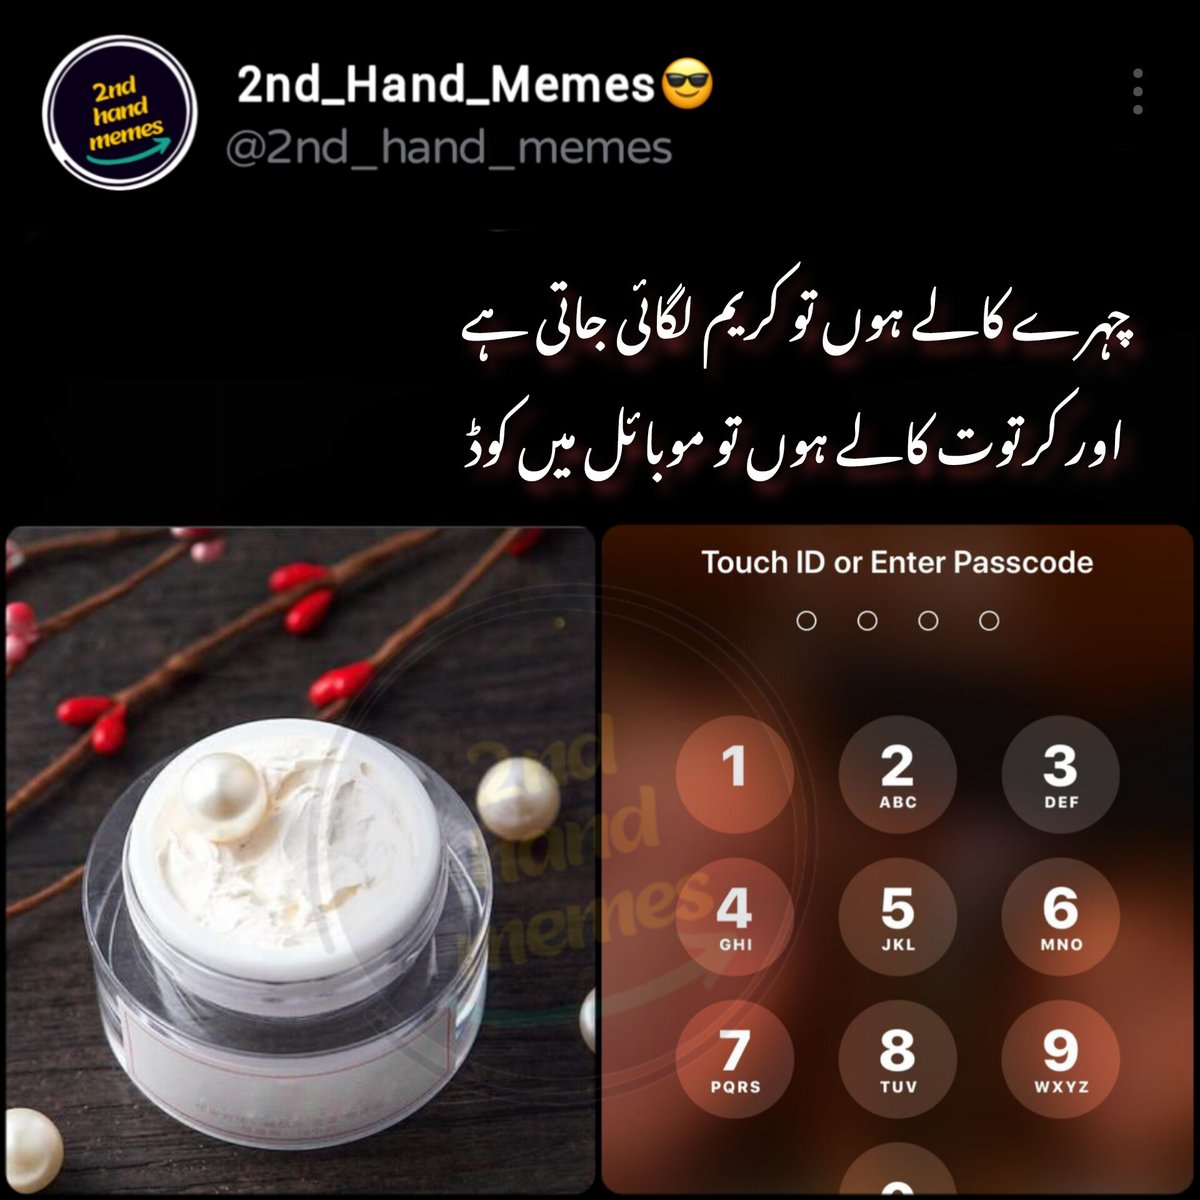 Kya yh sach ha
#Memes #Urdumemes #memes